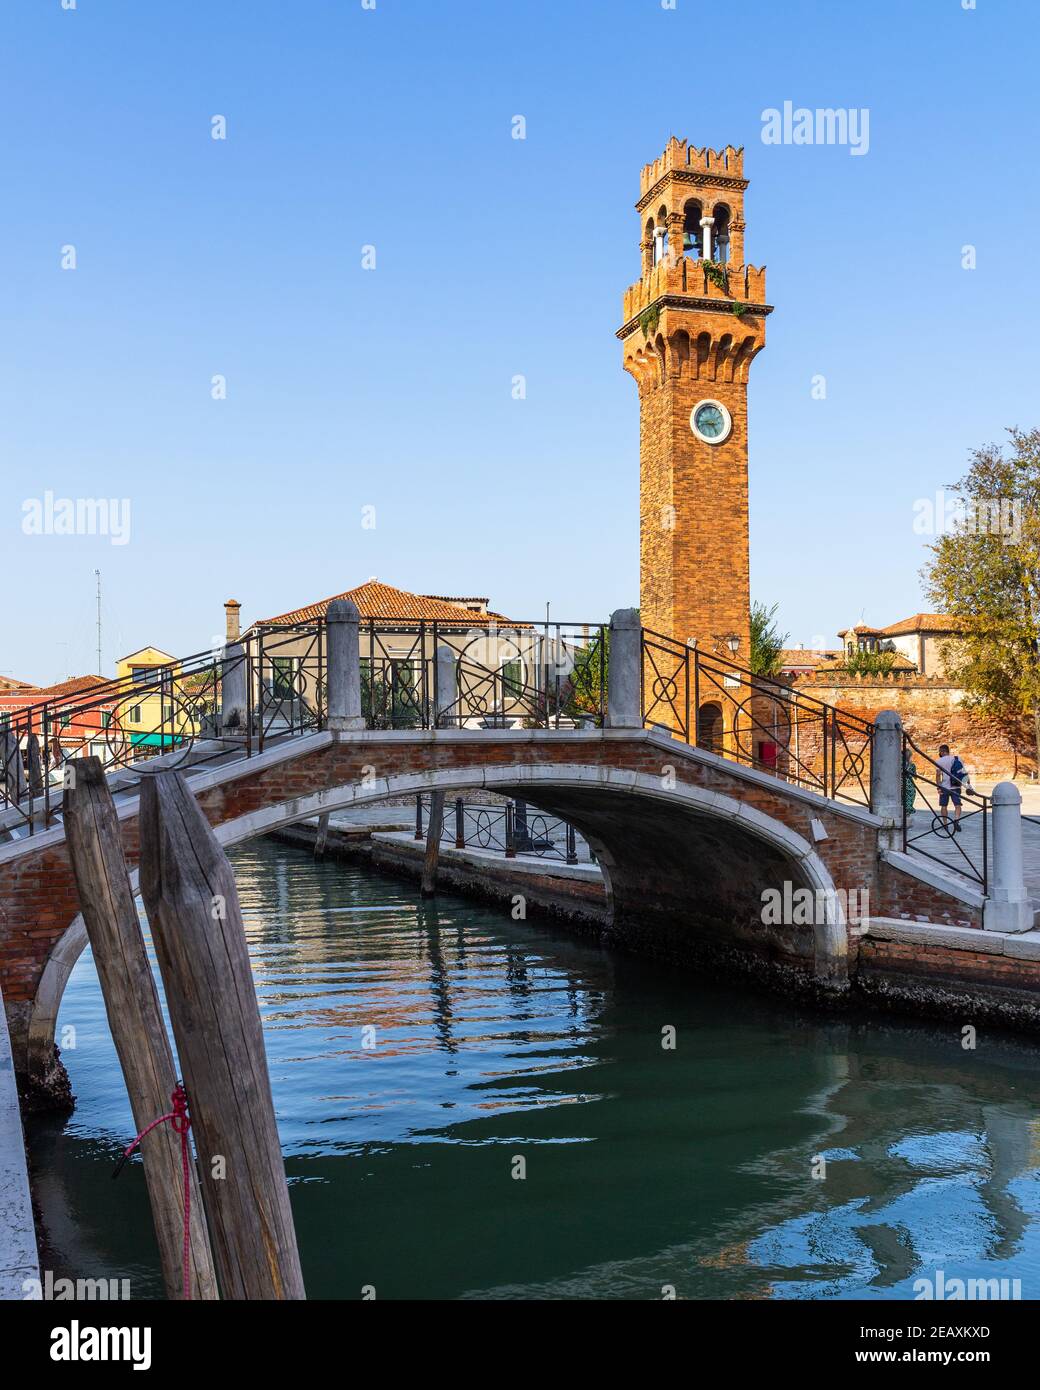 Vue sur Murano avec la Tour de l'horloge (Torre dell'Orologio) et une passerelle, Italie Banque D'Images